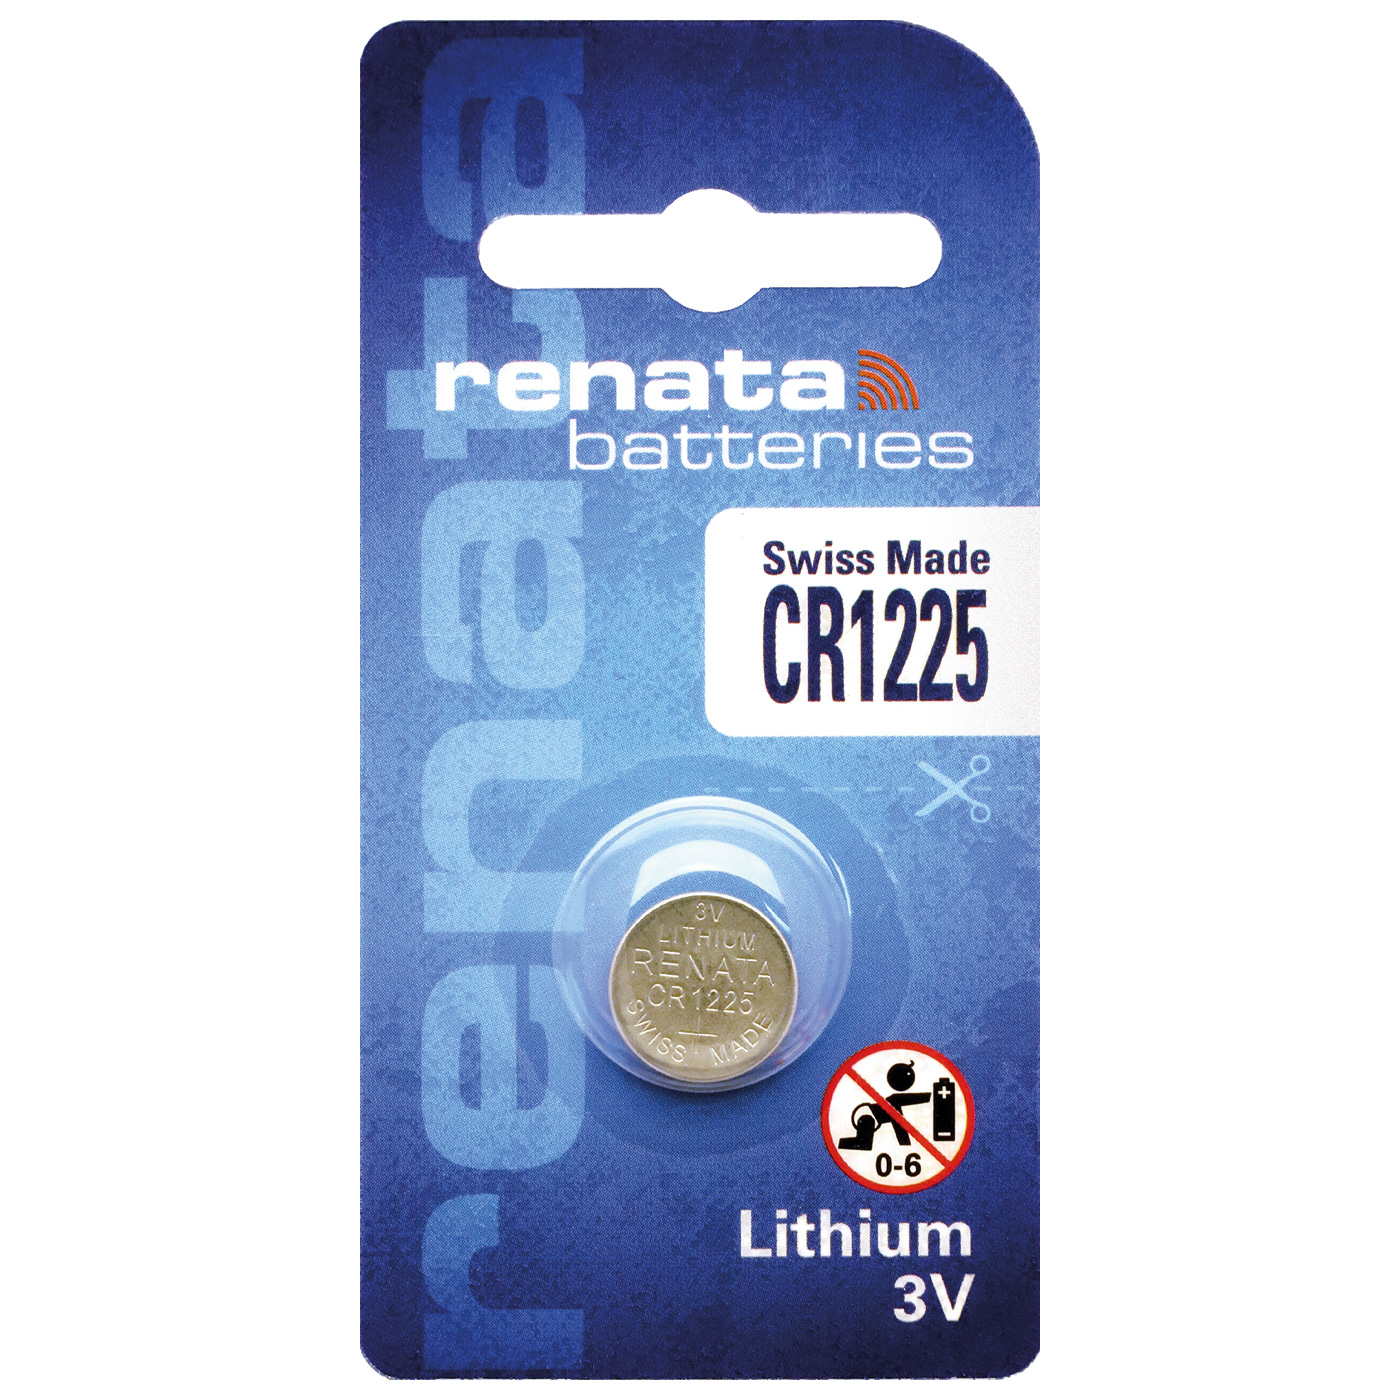 Renata CR 1225 lithium